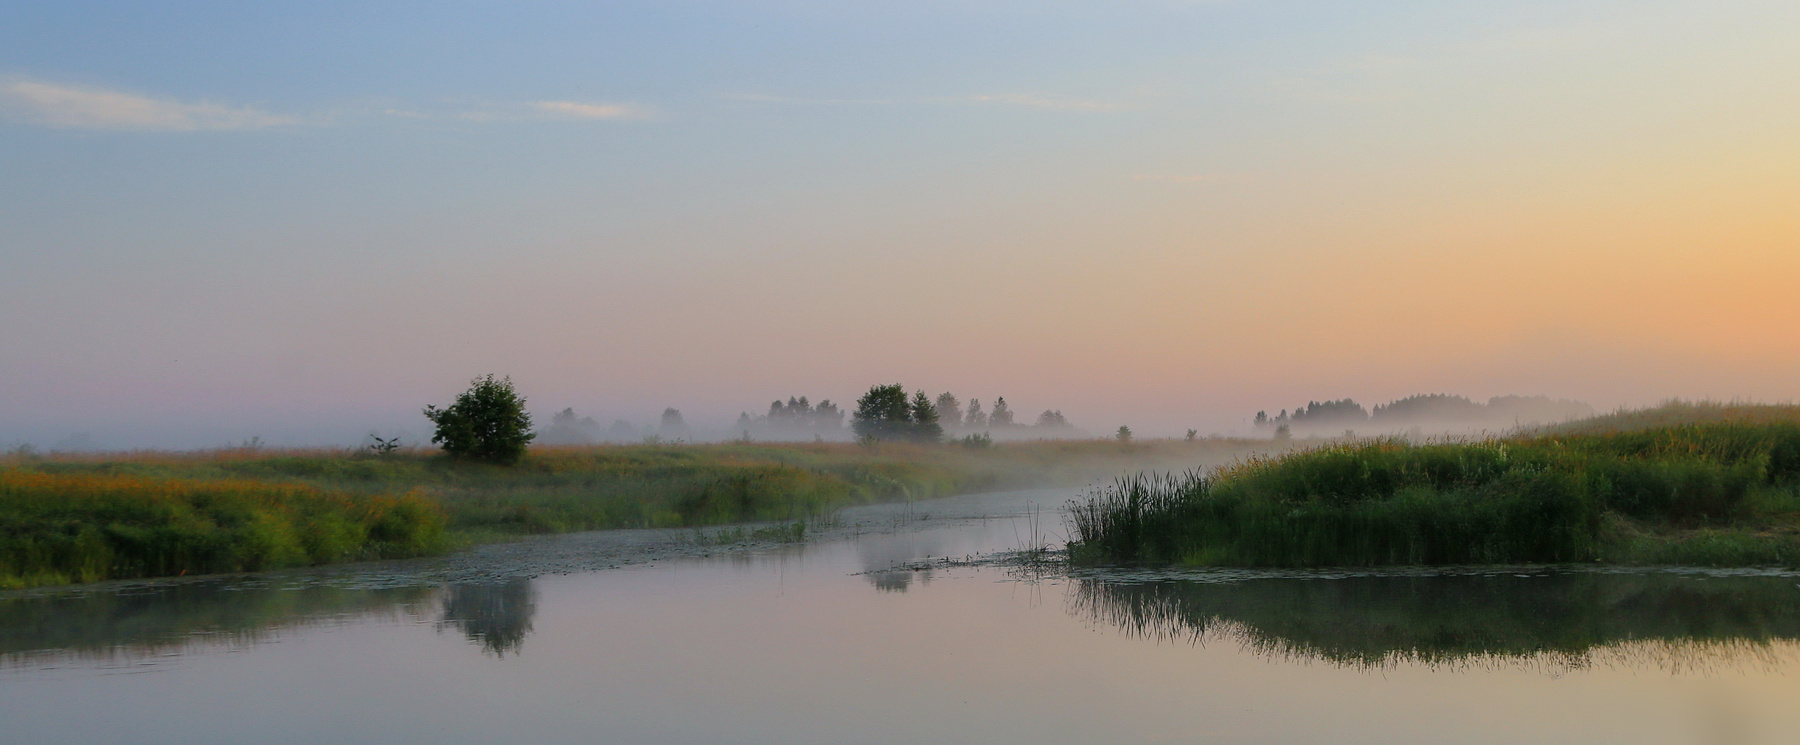 утром рано рано река пейзаж рассвет утро краски